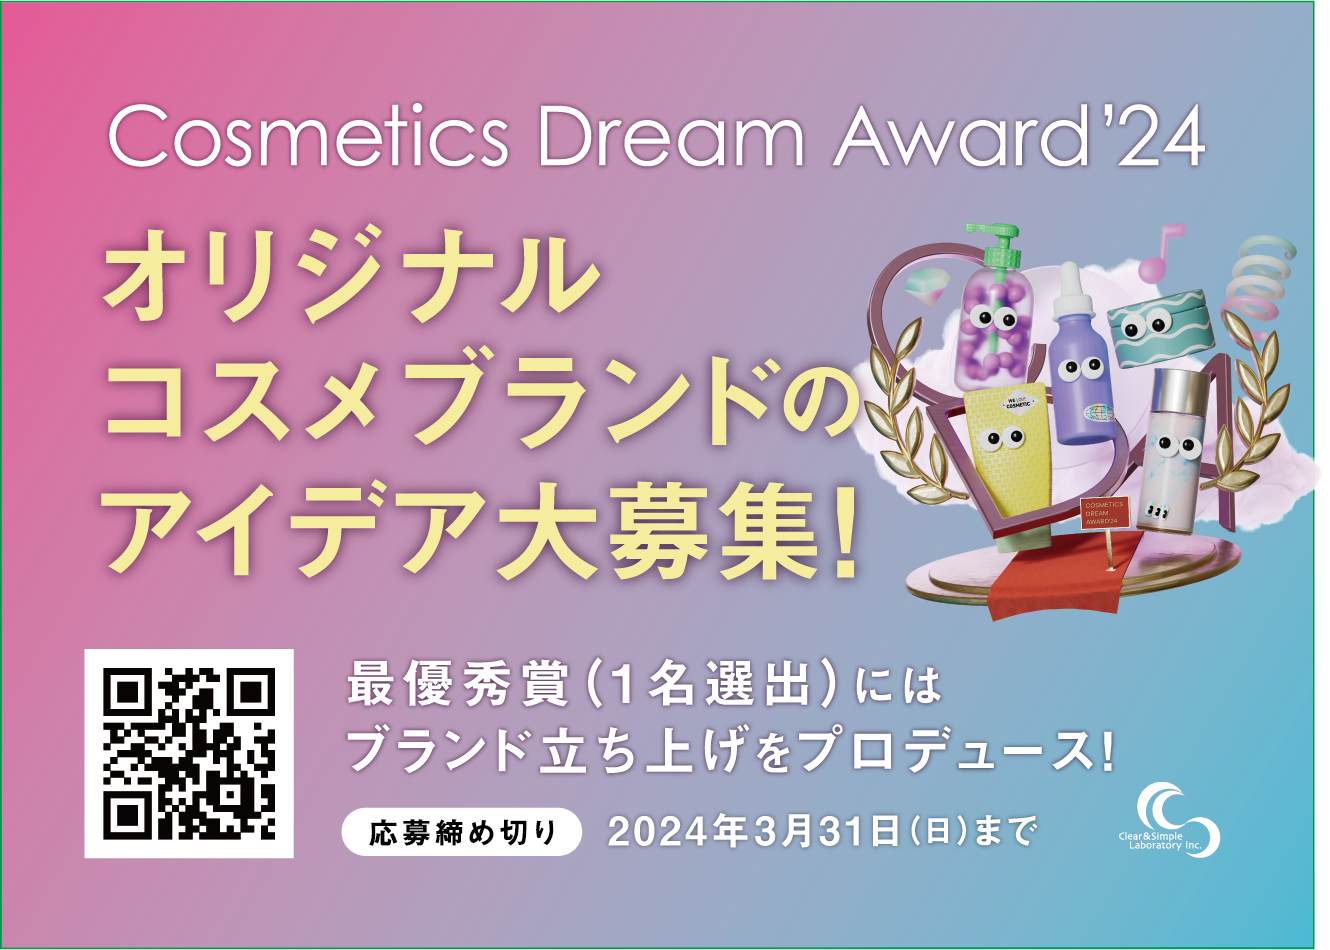 ϕiOEMIWiϕiÂi300~jSʃT|[guCosmetics Dream Award'24vJ